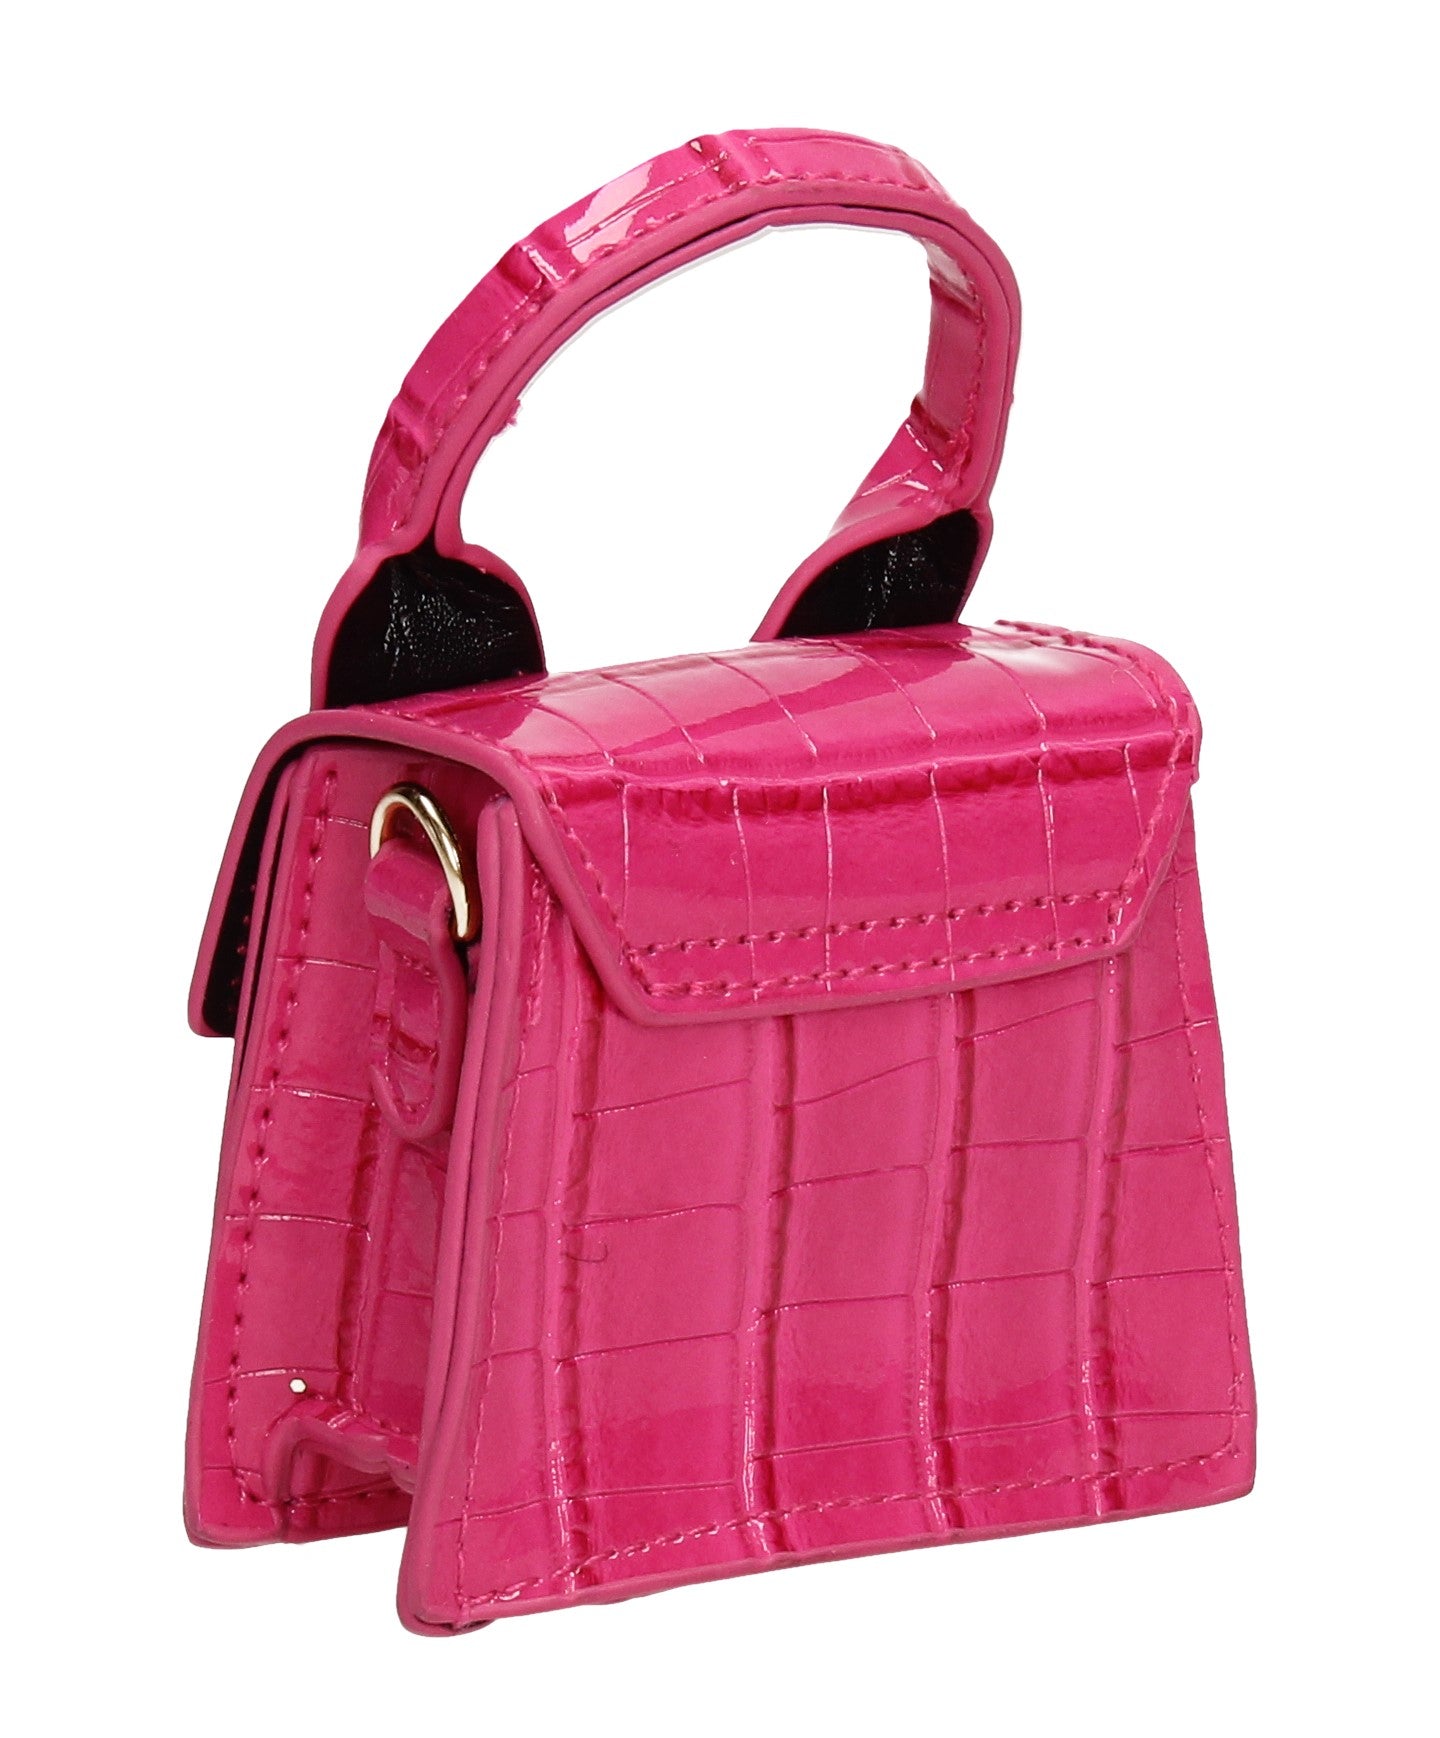 Brooklyn Faux Leather Croc Micro Grab Crossbody Clutch Bag Fuchsia Pink